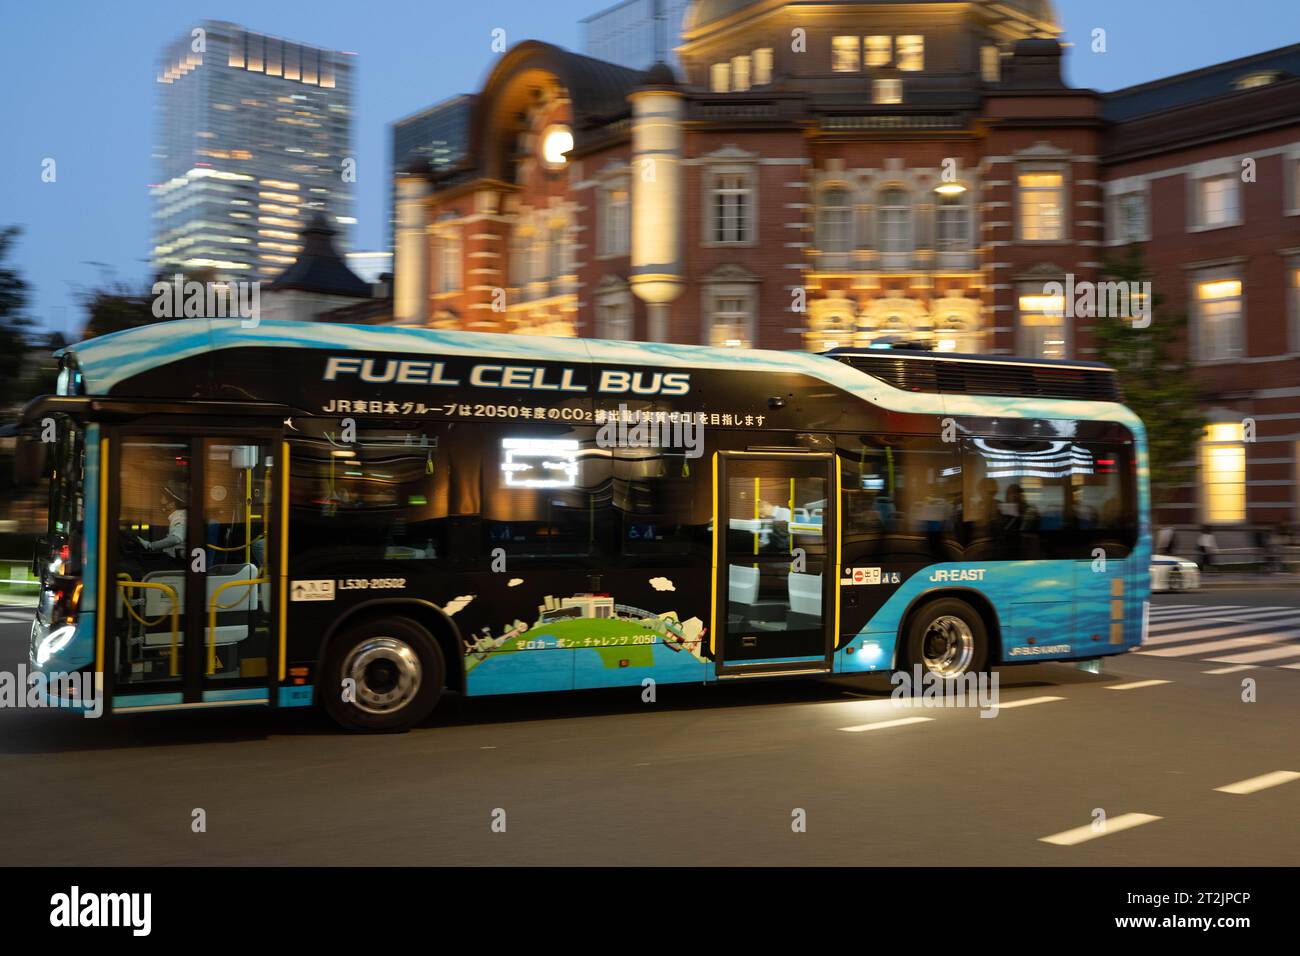 Tokio, Japan. Oktober 2023. Ein von JR East betriebener Wasserstoff-Brennstoffzellenbus, der an der Station Tokio vorbeifährt. Japan hat sich nur langsam mit Elektrofahrzeugen auf Basis von Lithium-Ionen-Batterien beschäftigt, anstatt sauberere Wasserstofftechnologien für nachhaltige Forschung und Entwicklung zu bevorzugen, da das Land keinen Zugang zu Seltenerdmineralien hat. (Kreditbild: © Taidgh Barron/ZUMA Press Wire) NUR REDAKTIONELLE VERWENDUNG! Nicht für kommerzielle ZWECKE! Stockfoto